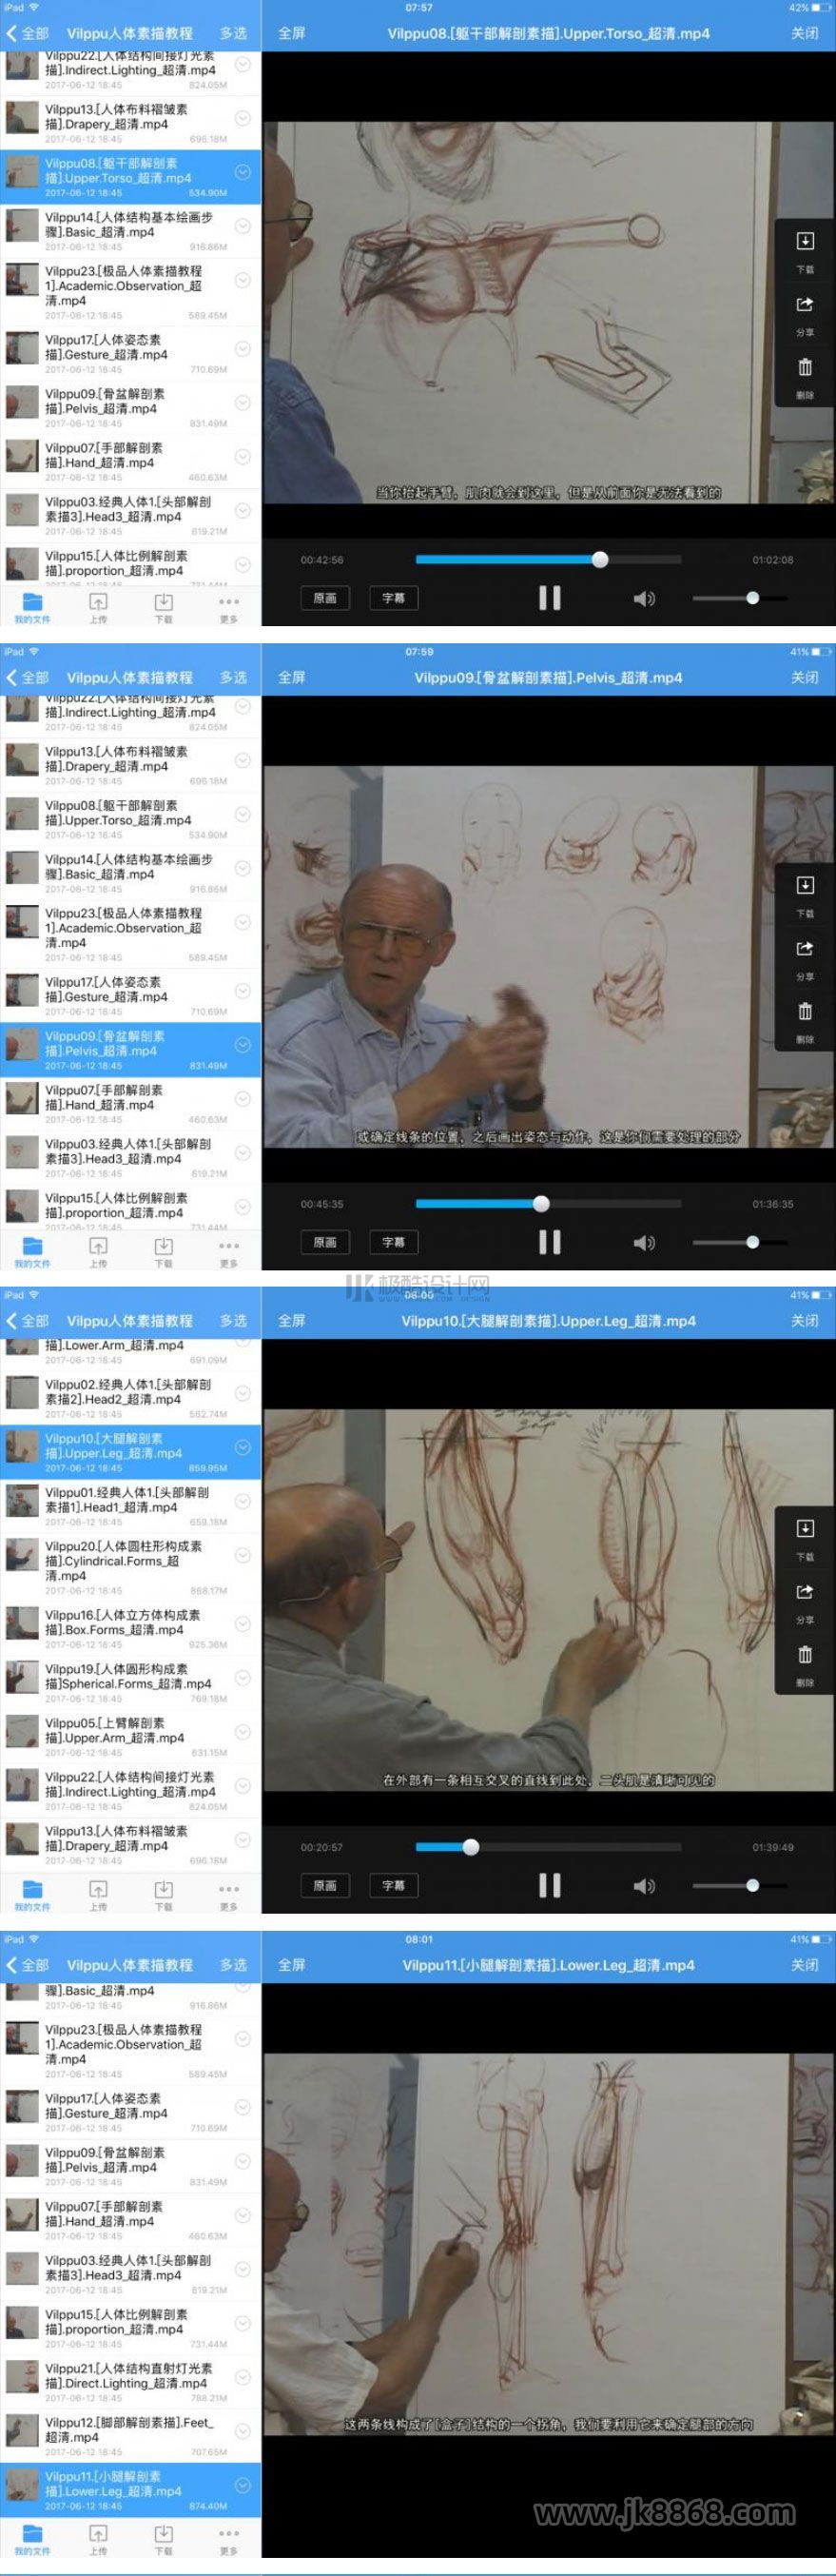 【A164】Glenn Vilppu人体结构素描解剖全集【人体素描视频教程-推荐】